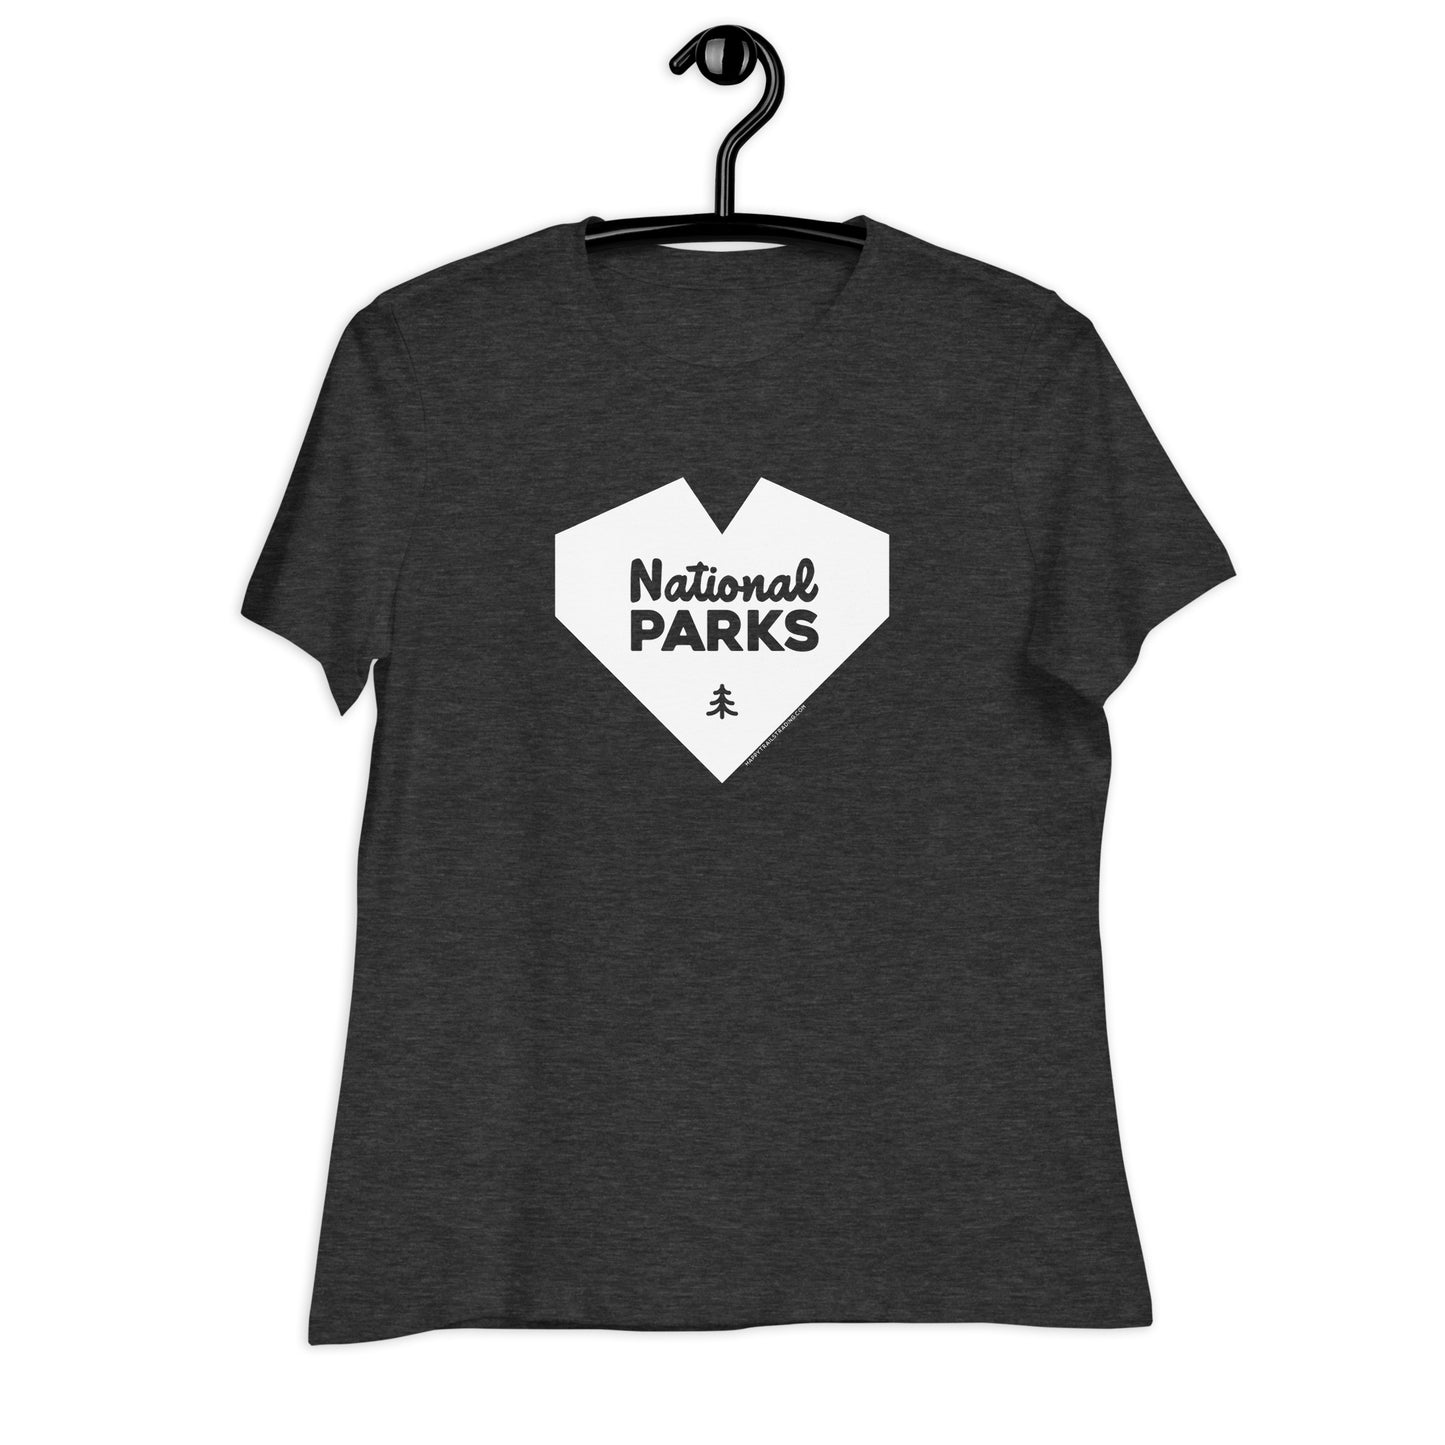 National Park Love - Women's Relaxed T-Shirt